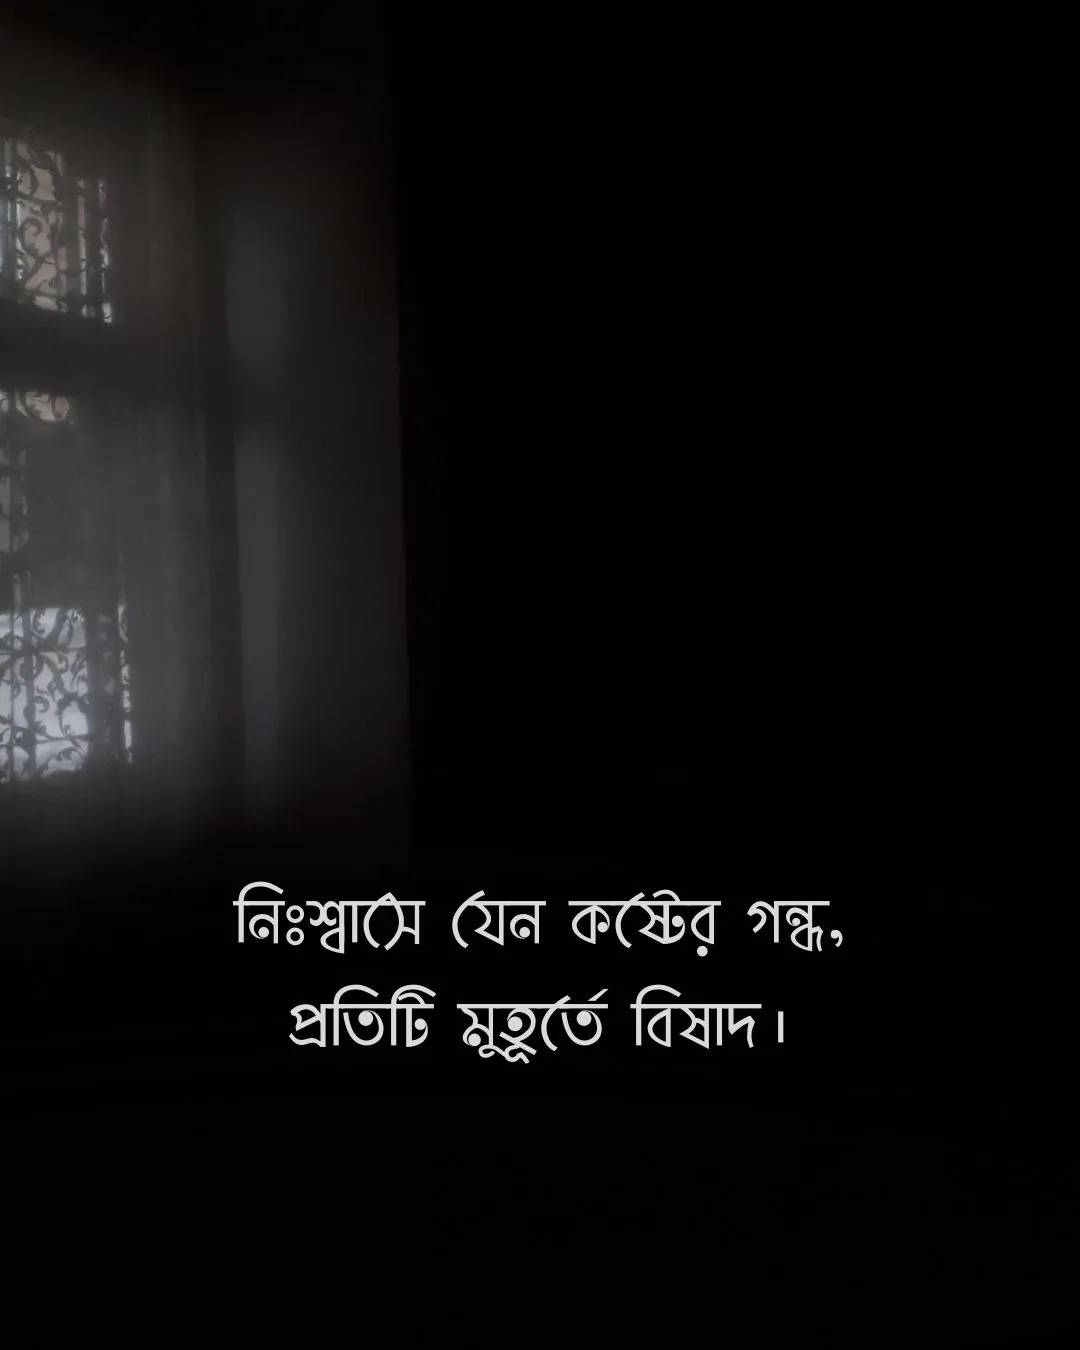 নিঃশ্বাসে যেন কষ্টের গন্ধ, প্রতিটি মুহূর্তে বিষাদ - dark room sadness bangla